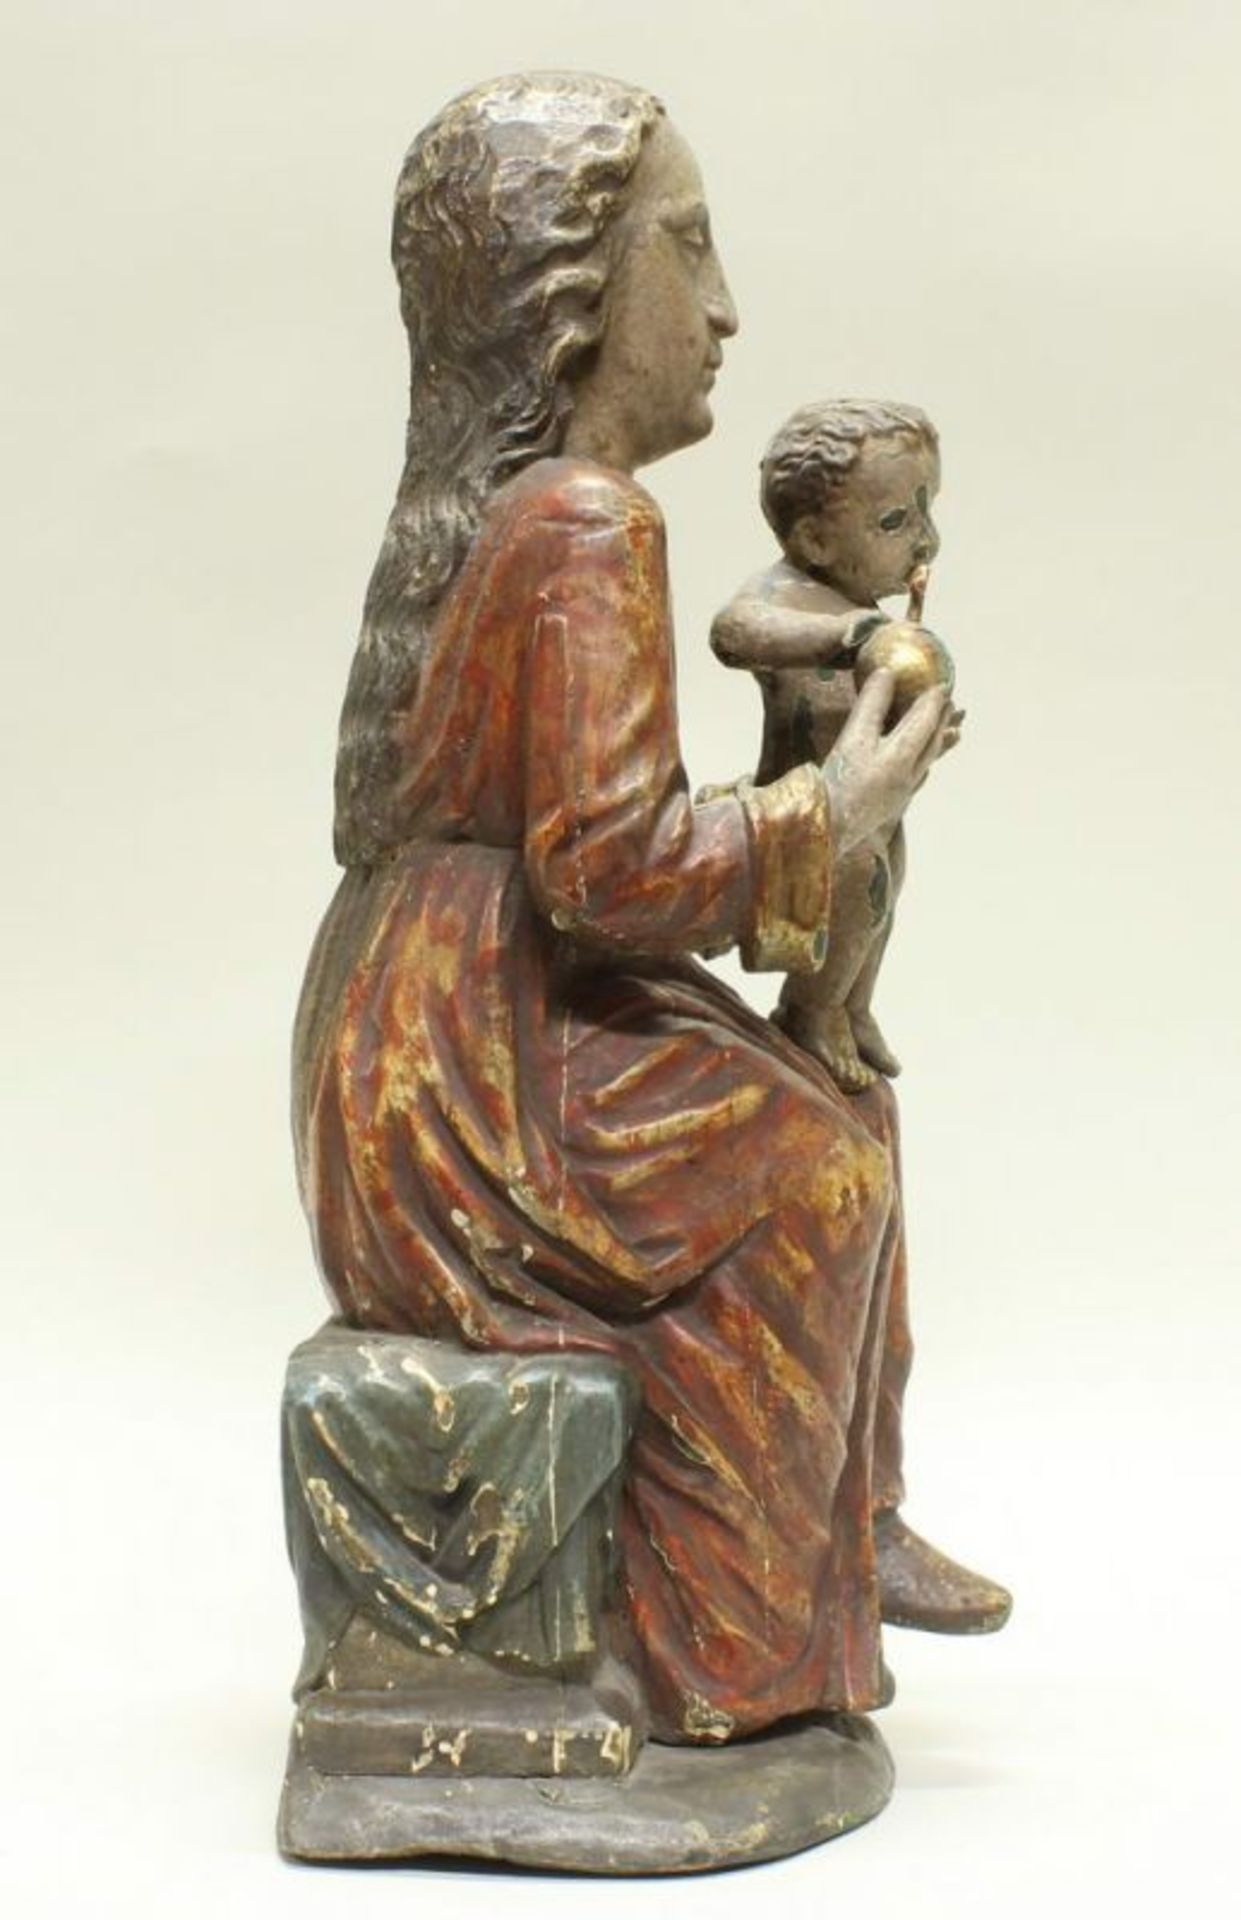 Skulptur, Holz geschnitzt, "Muttergottes mit Kind", im gotischen Stil, 19./20. Jh., Fassung - Image 5 of 5